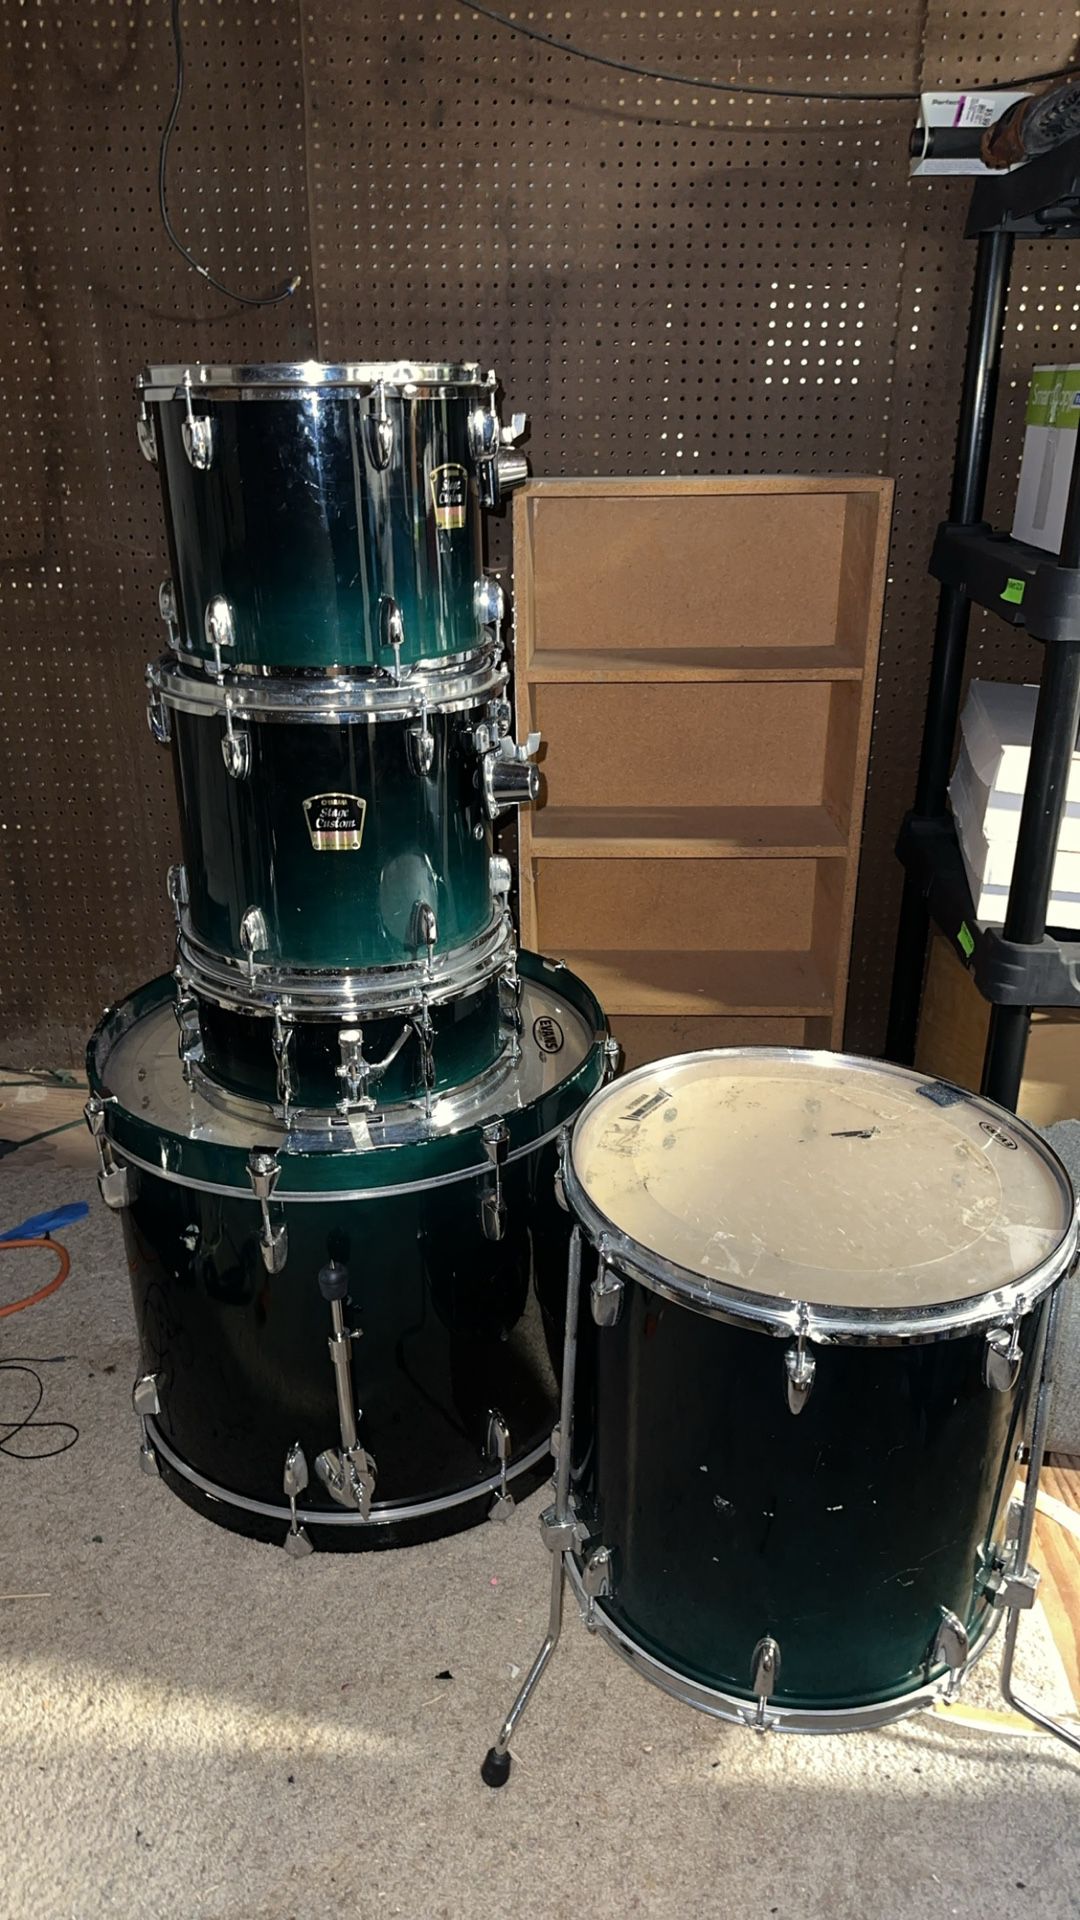 Yamaha Stage Custom Advantage Drum Kit